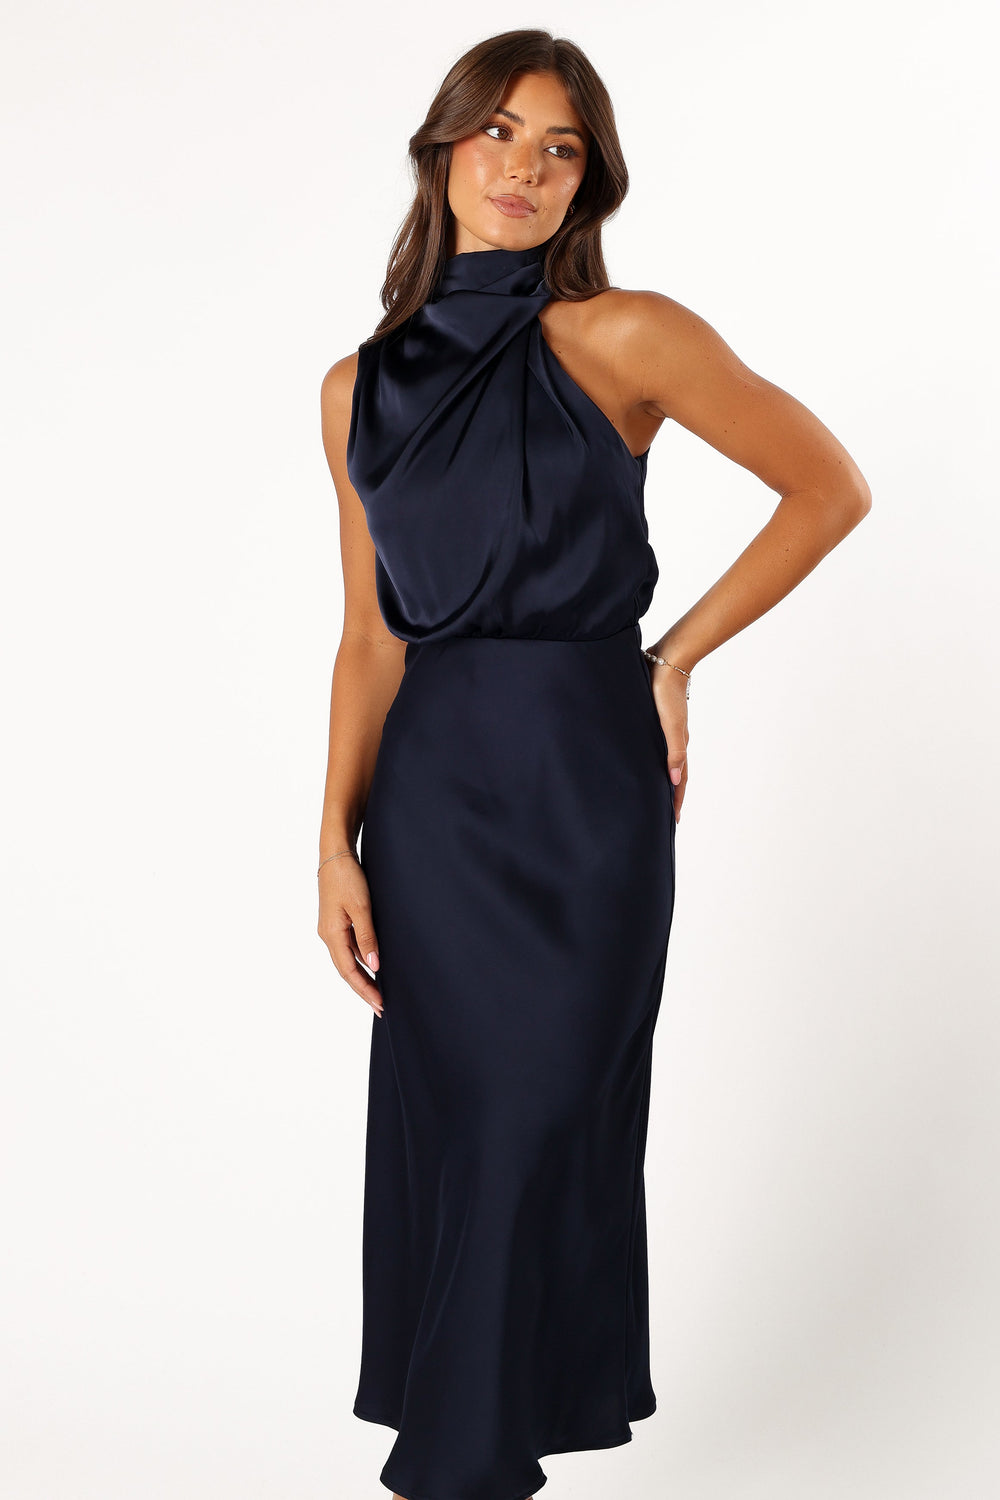 DRESSES @Anabelle Halter Neck Midi Dress - Navy (Hold for Modern Romance)